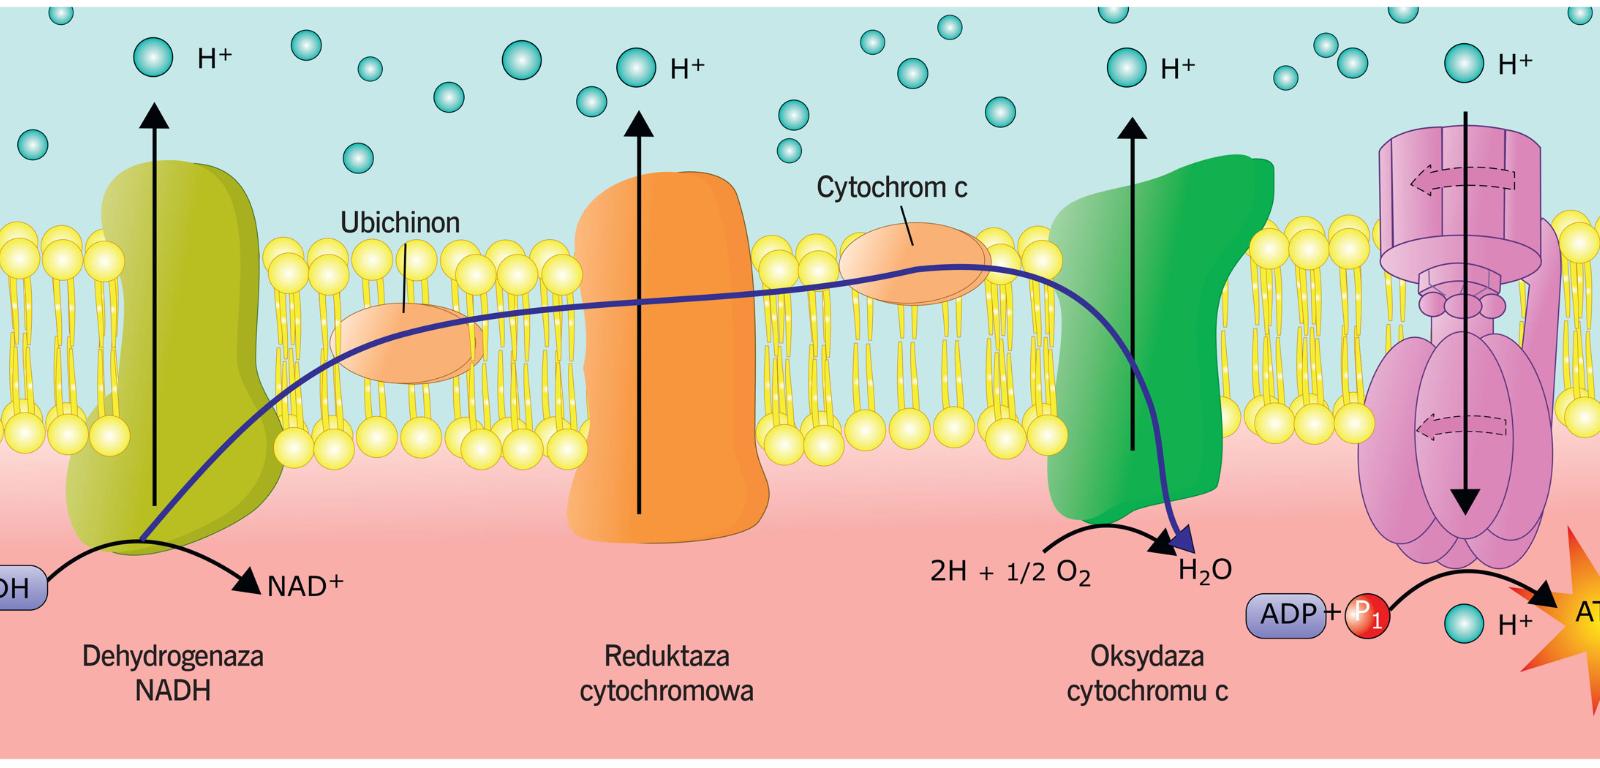 Oksydaza cytochromu c należy do tzw. łańcucha oddechowego, czyli zespołu związków chemicznych w mitochondriach, które produkują ATP – nośnik energii chemicznej niezbędnej w metabolizmie komórki.